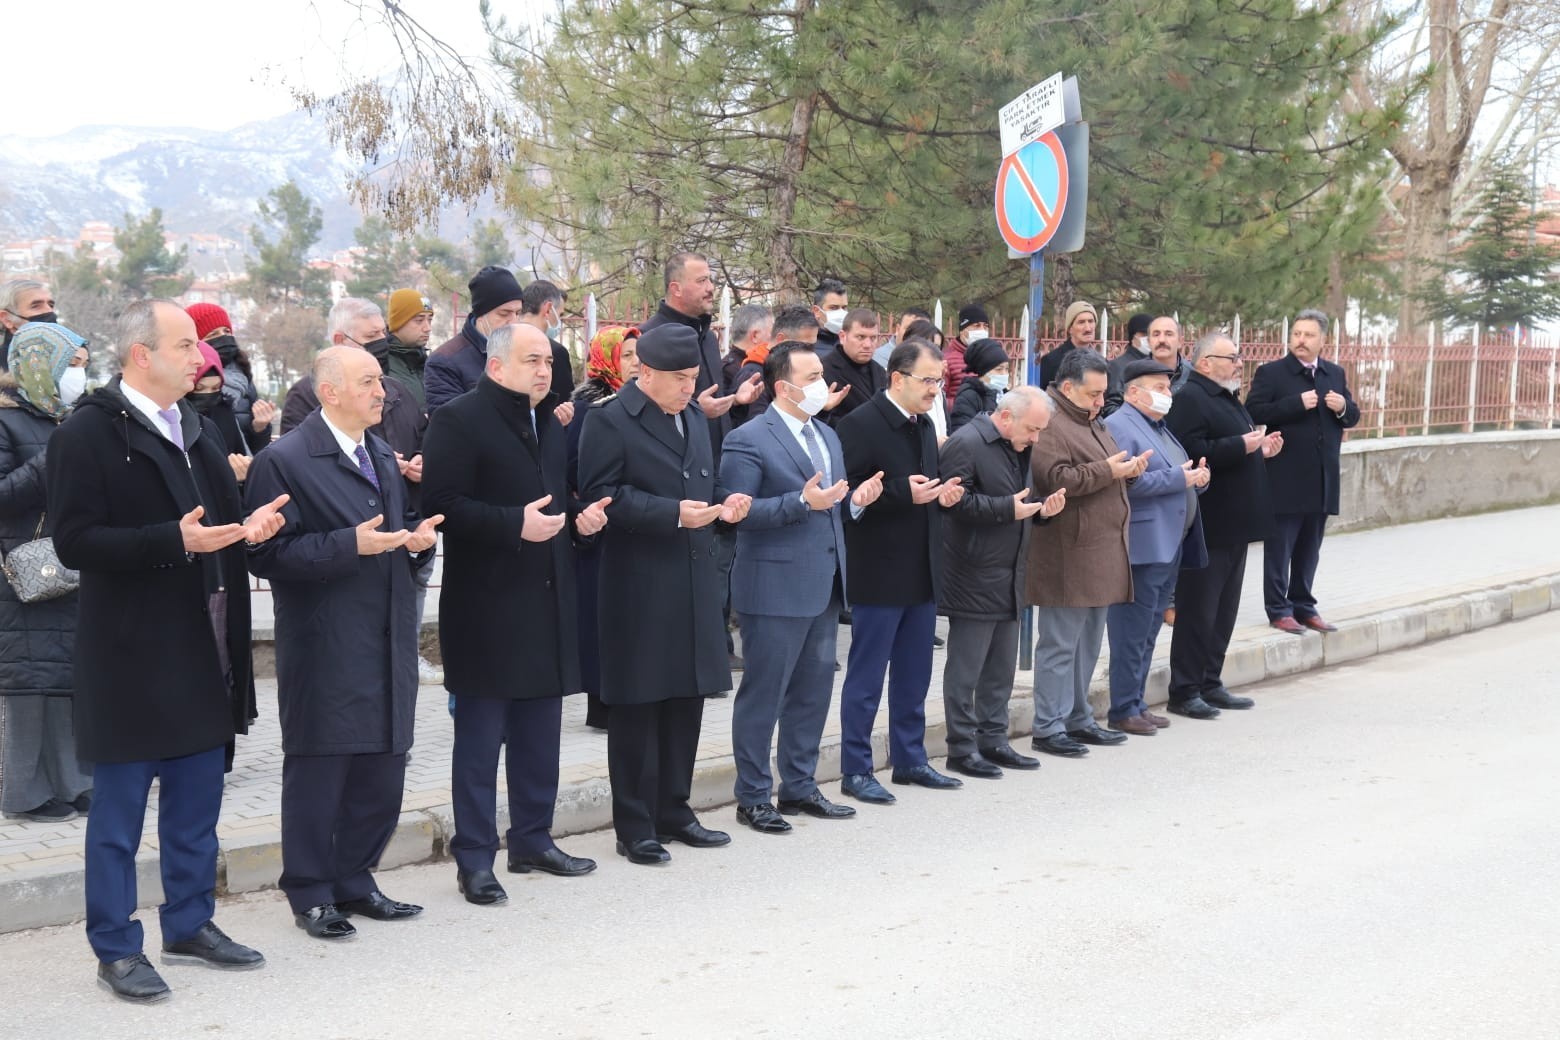 1999 yılında Vali Ayhan Çevik’e düzenlenen saldırıda şehit düşen vatandaşlar anıldı #cankiri